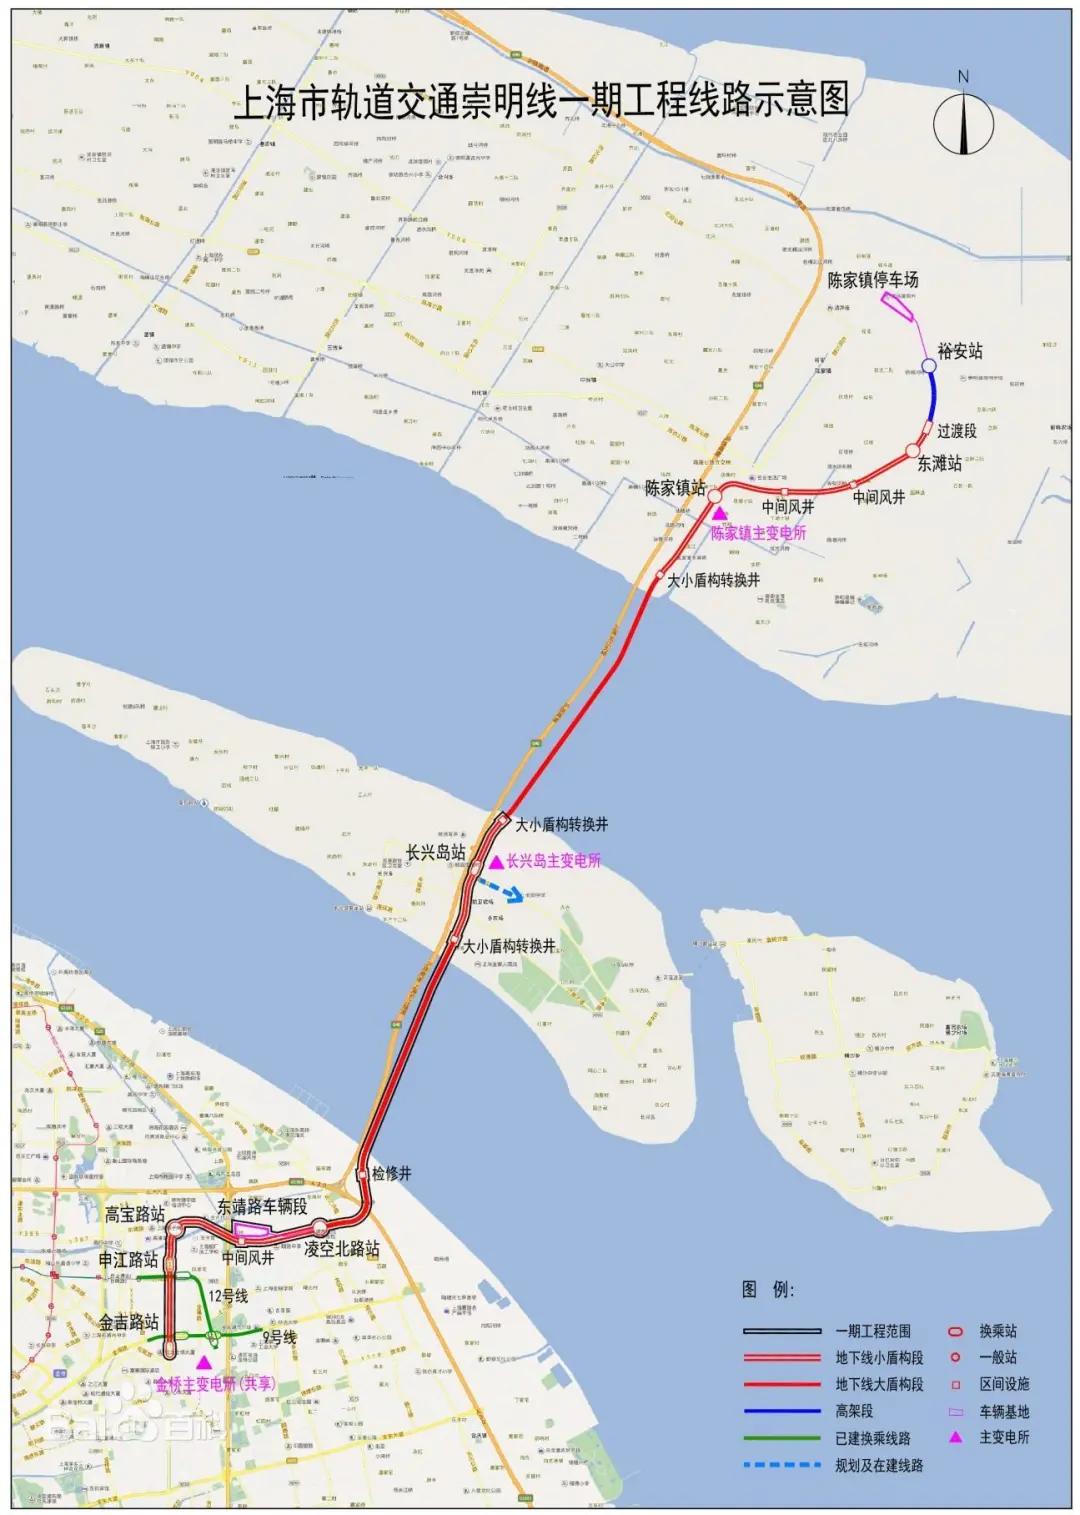 2021年3月底,轨交崇明线一期工程(浦东到长兴段)已正式进入施工阶段.